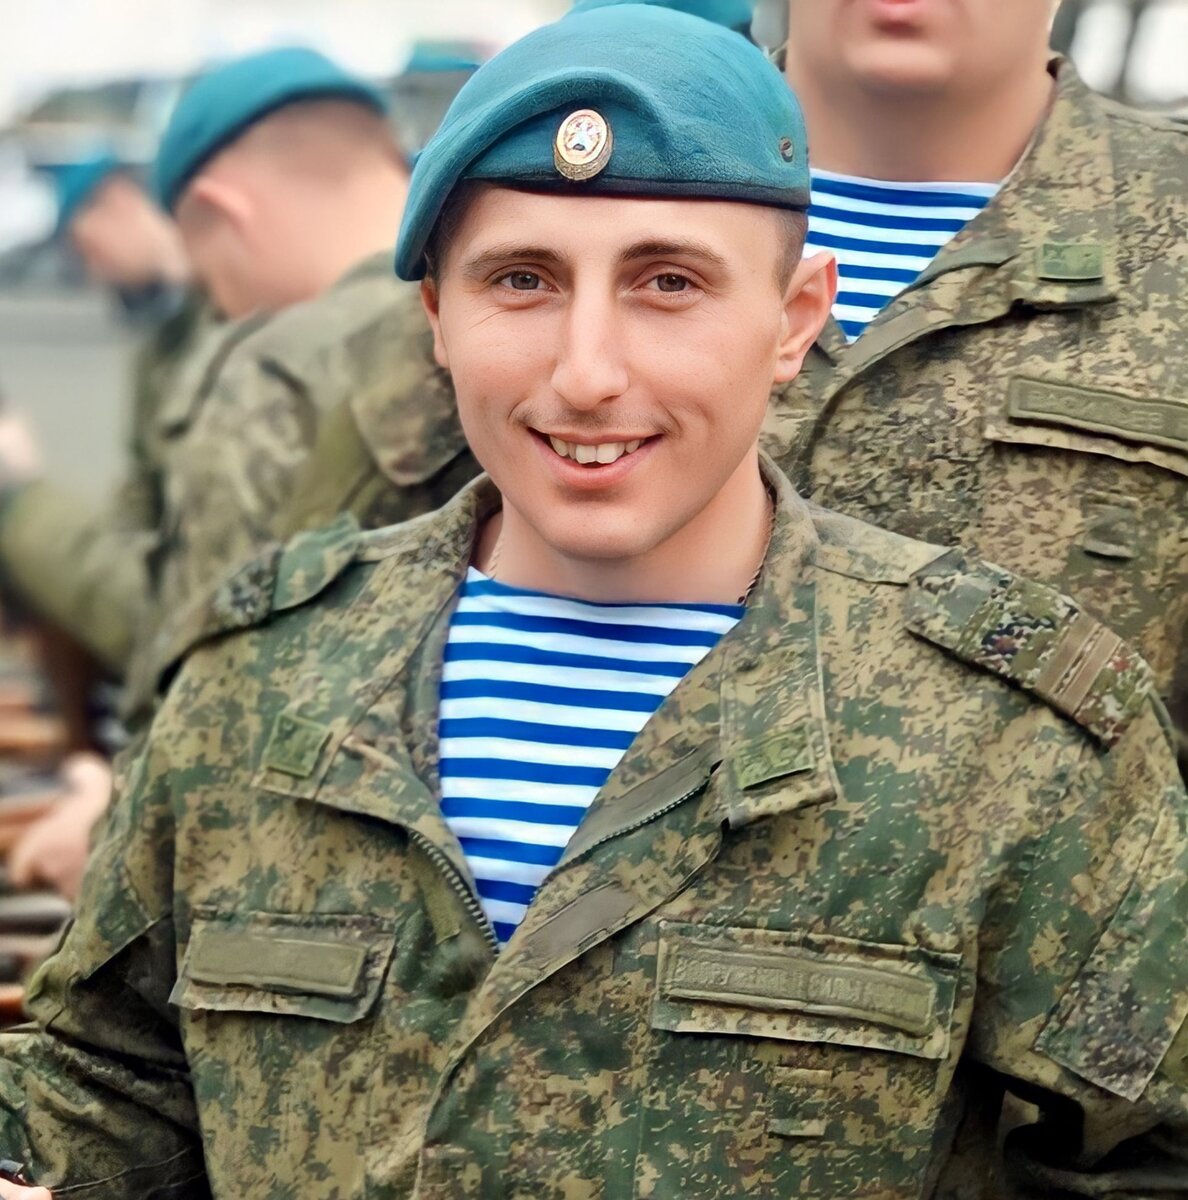 Сегодня, 5 октября, заместителю командира боевой машины – начальнику отделения 76-й десантно-штурмовой дивизии Леониду Мингалёву исполнилось бы 32 года.